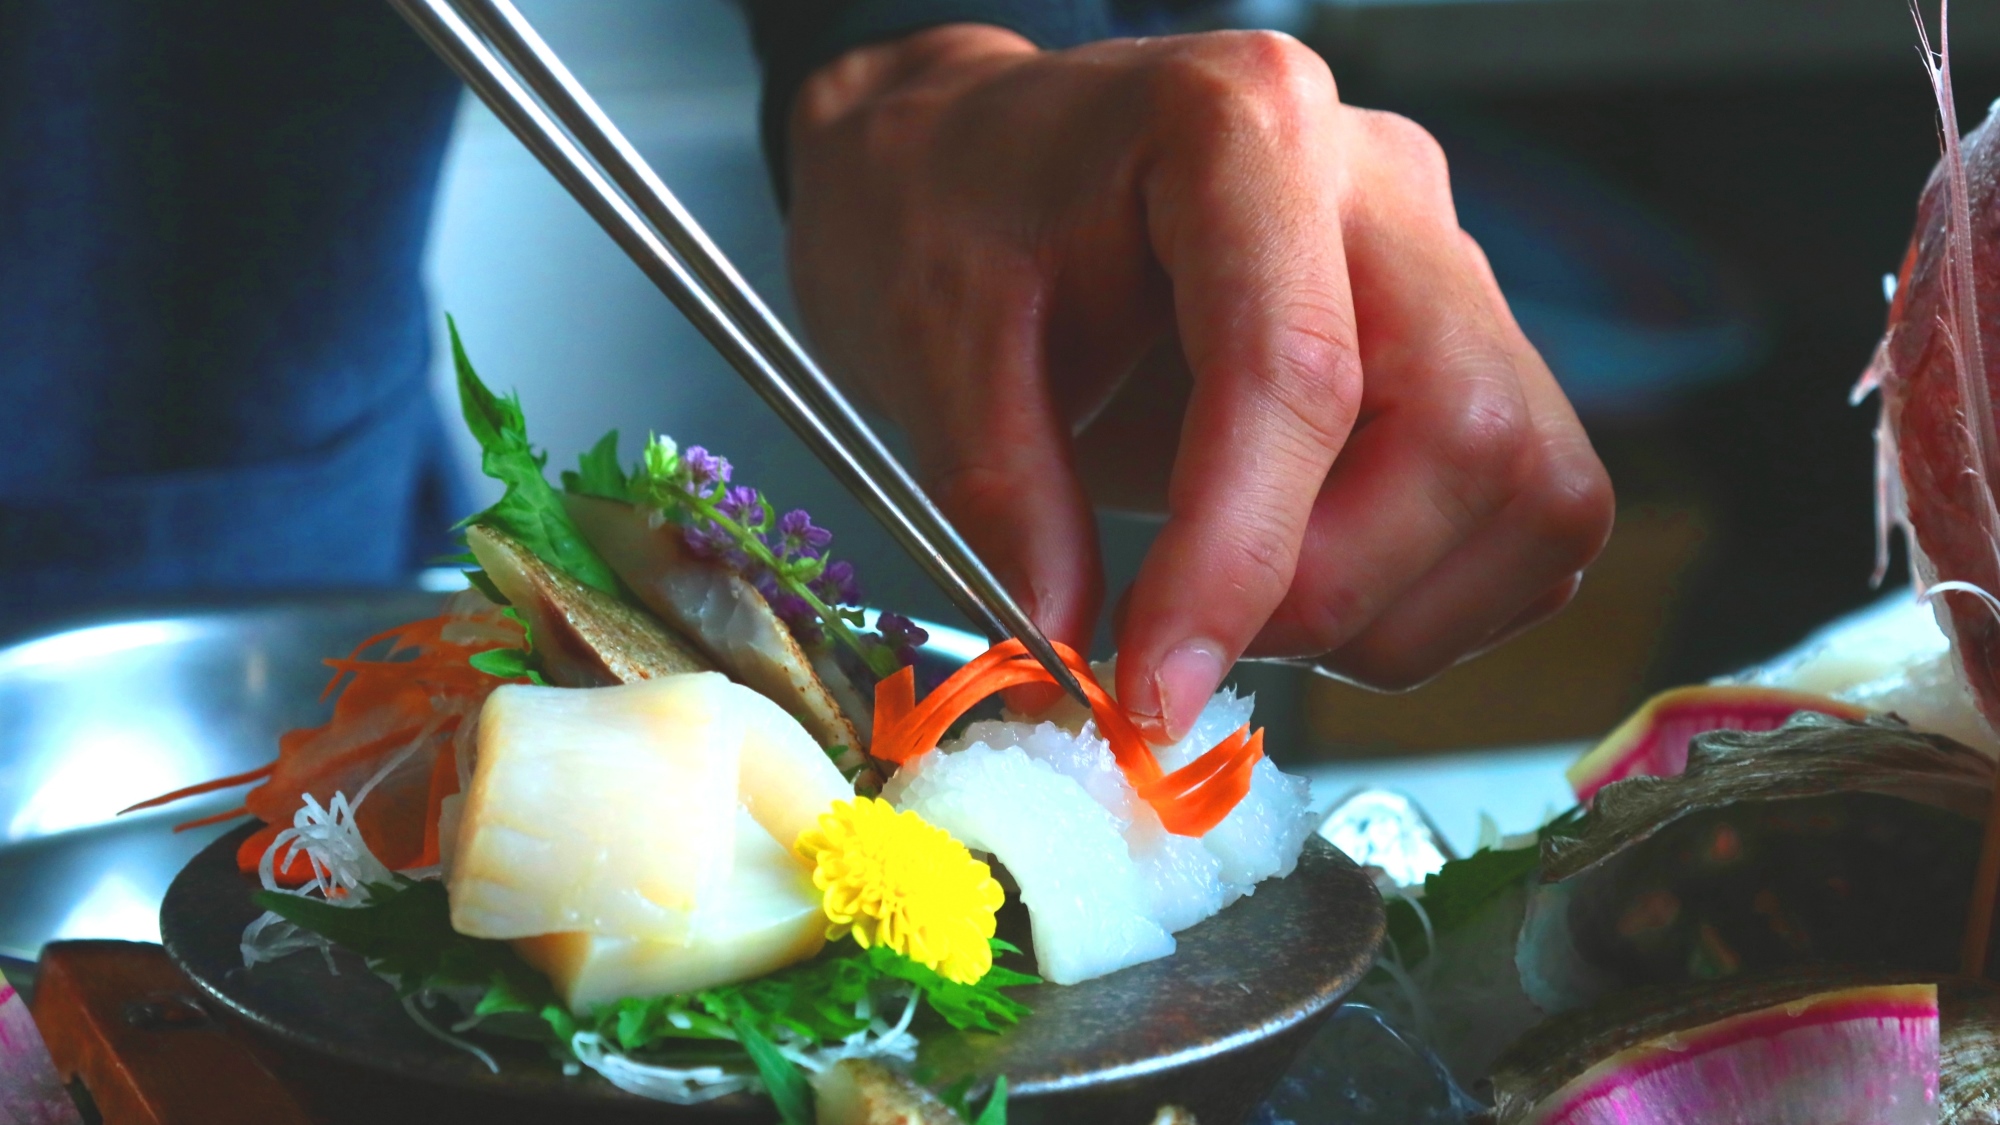 日間賀島ならではの海の味覚を一番美味しい食べ方で。